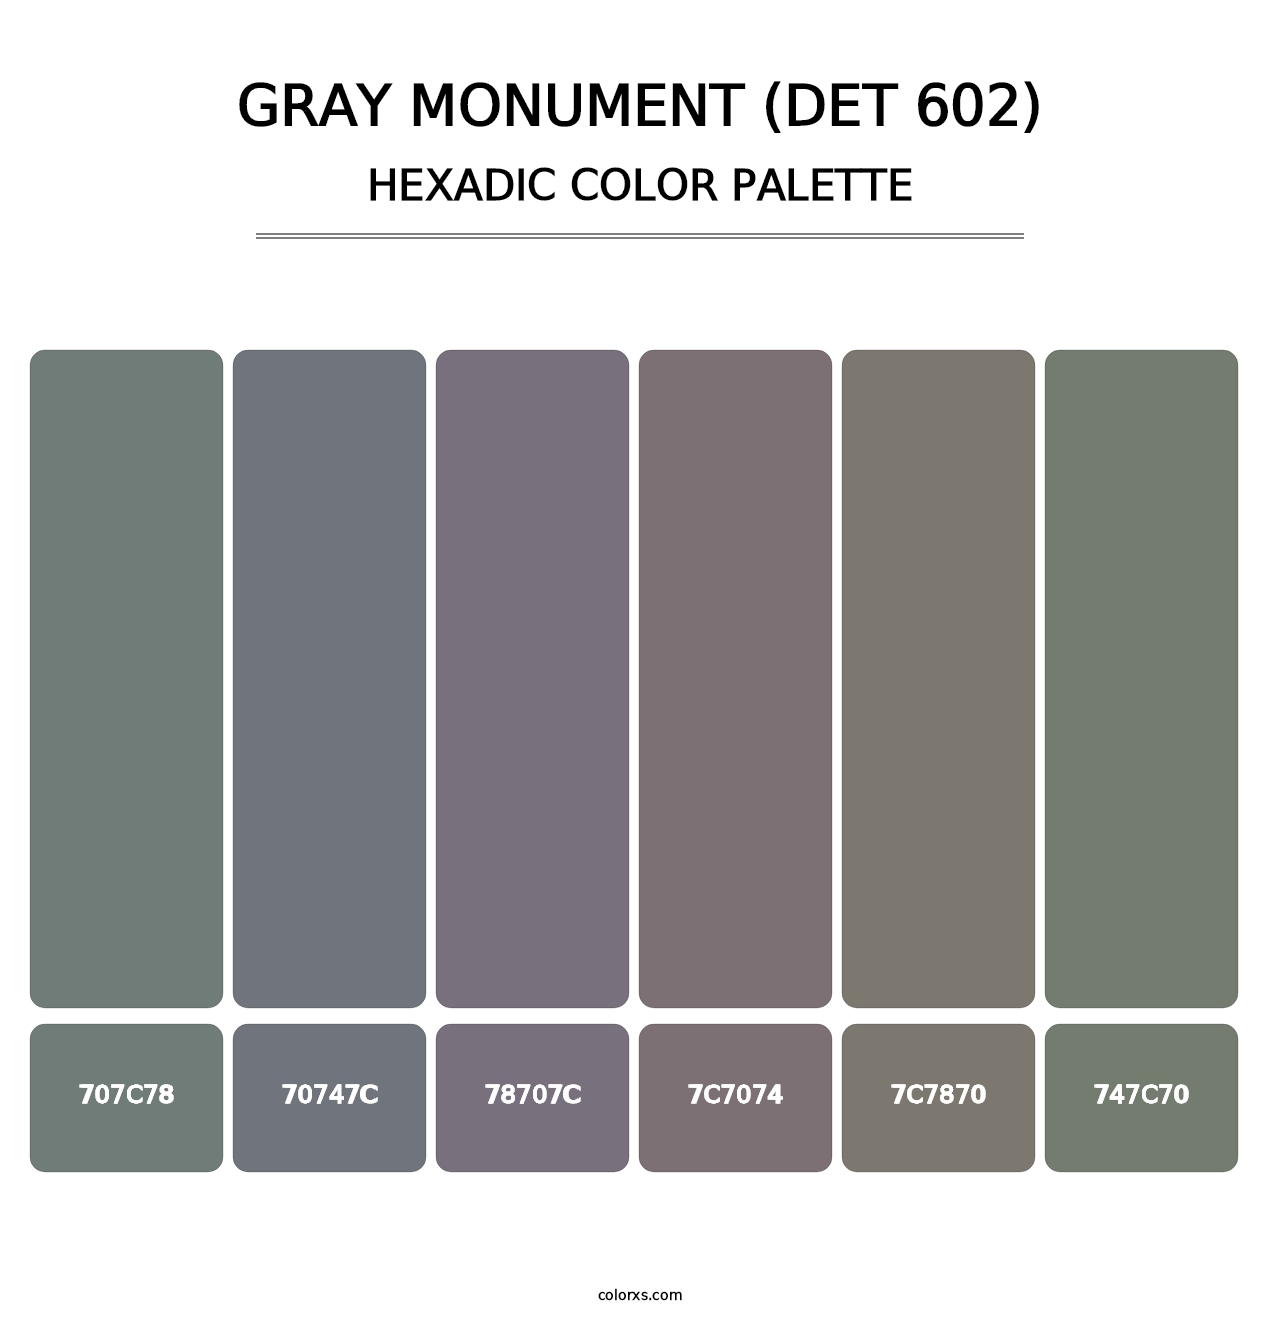 Gray Monument (DET 602) - Hexadic Color Palette